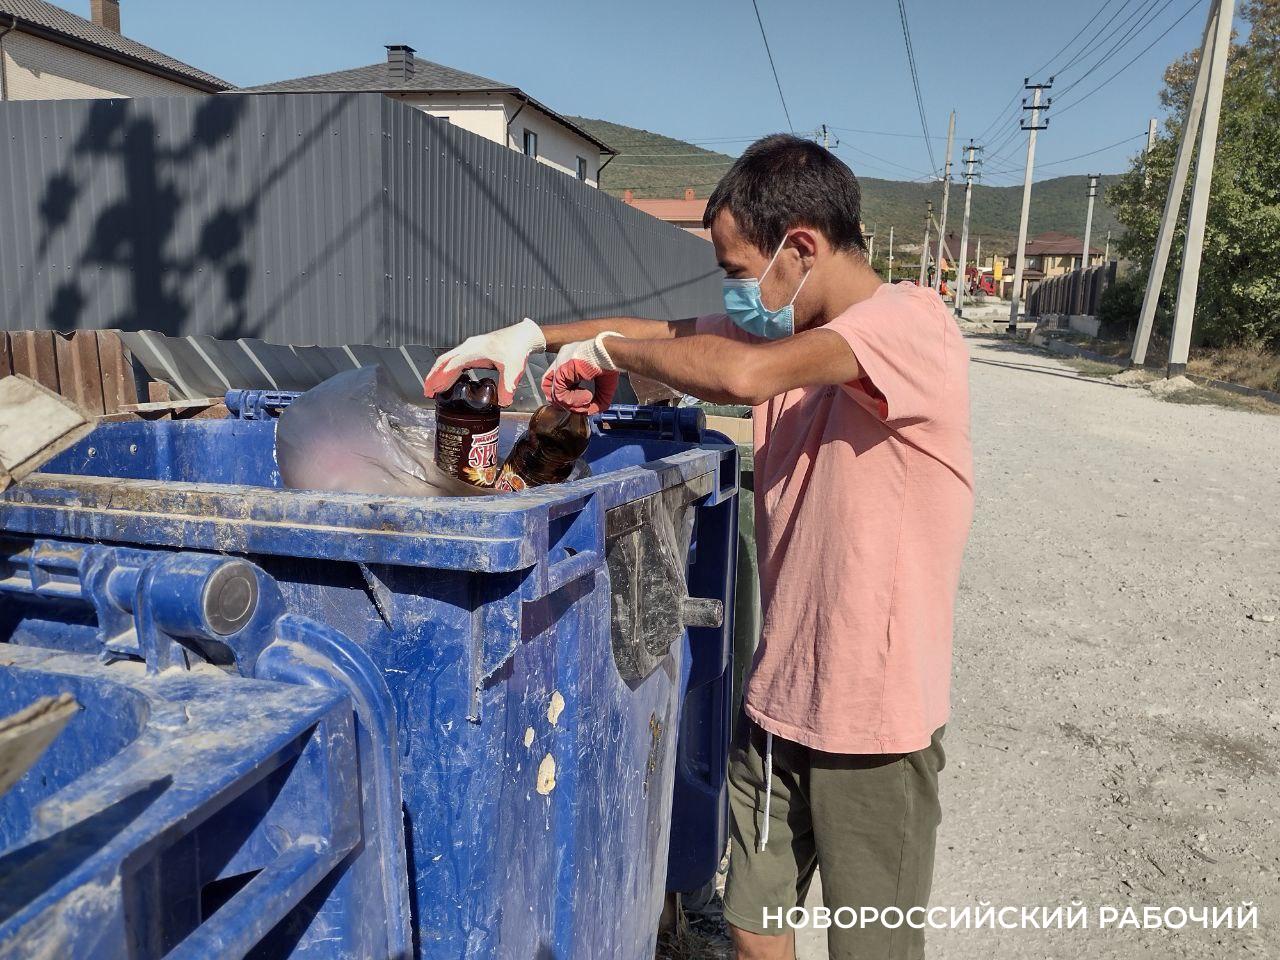 В Новороссийске люди питаются с мусорных контейнеров. Хайп, жажда халявы или нужда? 